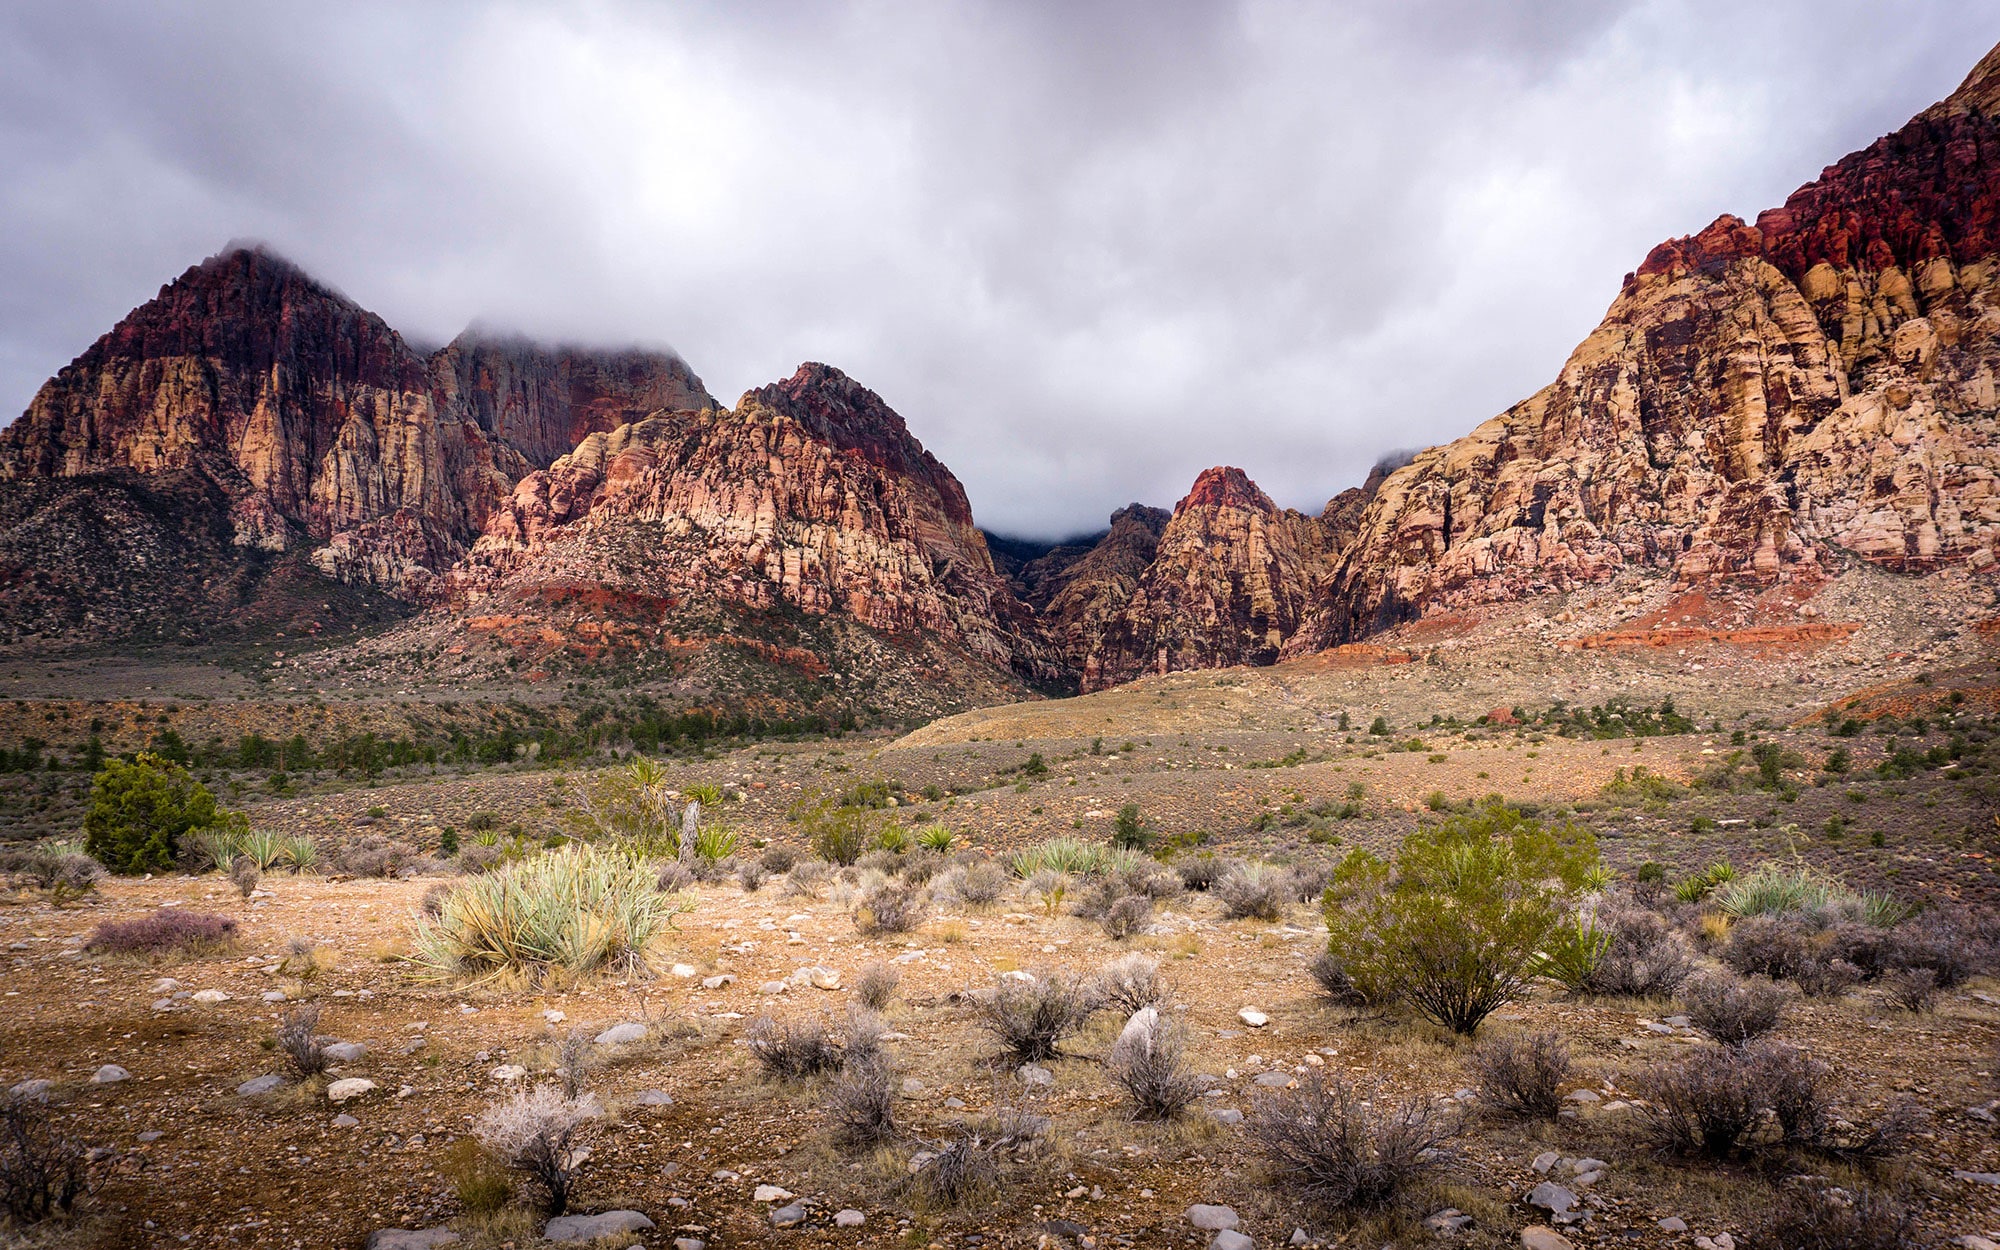 Desert landscape at Red Rock National Conservation Area